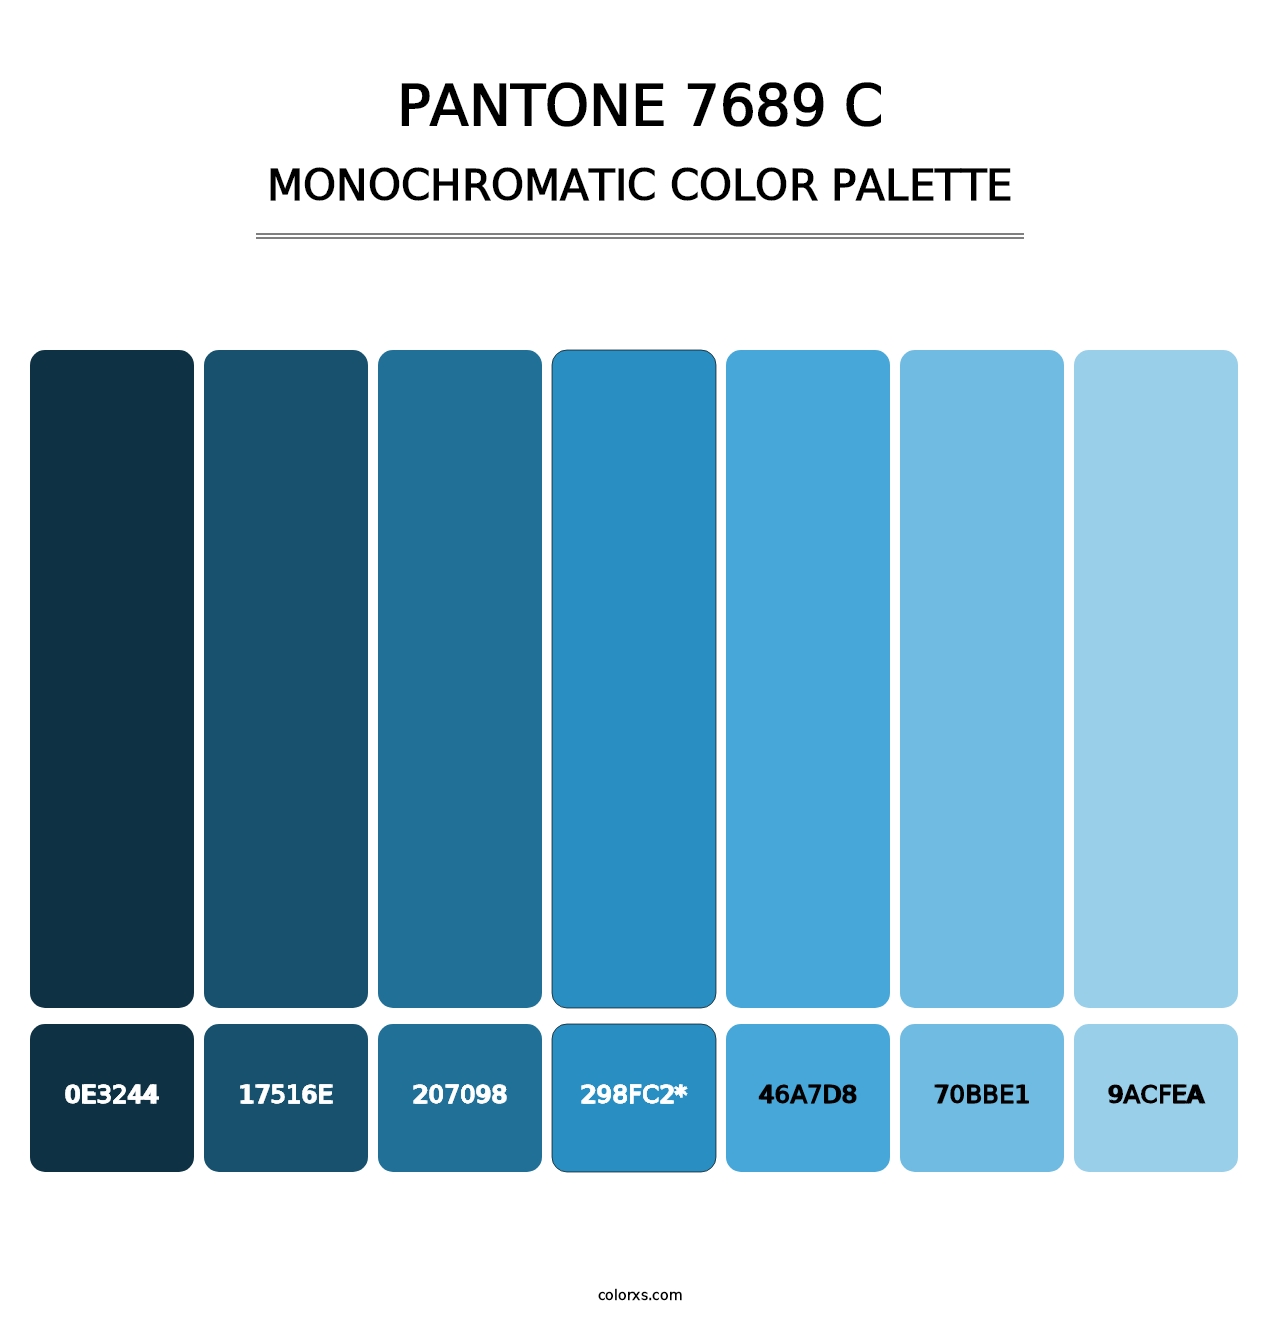 PANTONE 7689 C - Monochromatic Color Palette